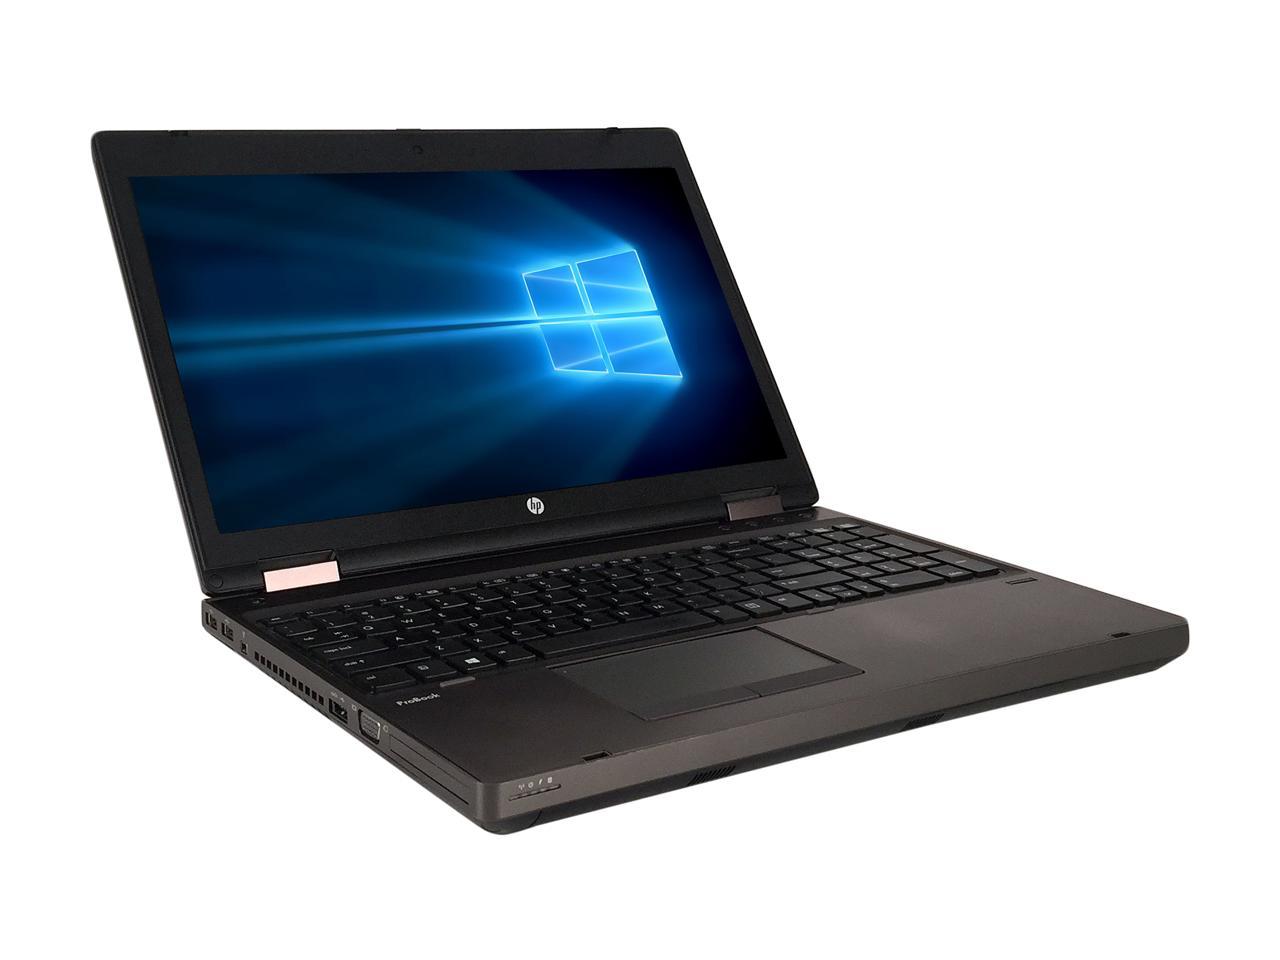 HP ProBook 6560bCore i3 16GB 新品SSD240GB スーパーマルチ 無線LAN Windows10 64bitWPSOffice 15.6インチ  パソコン  ノートパソコンドライブあり